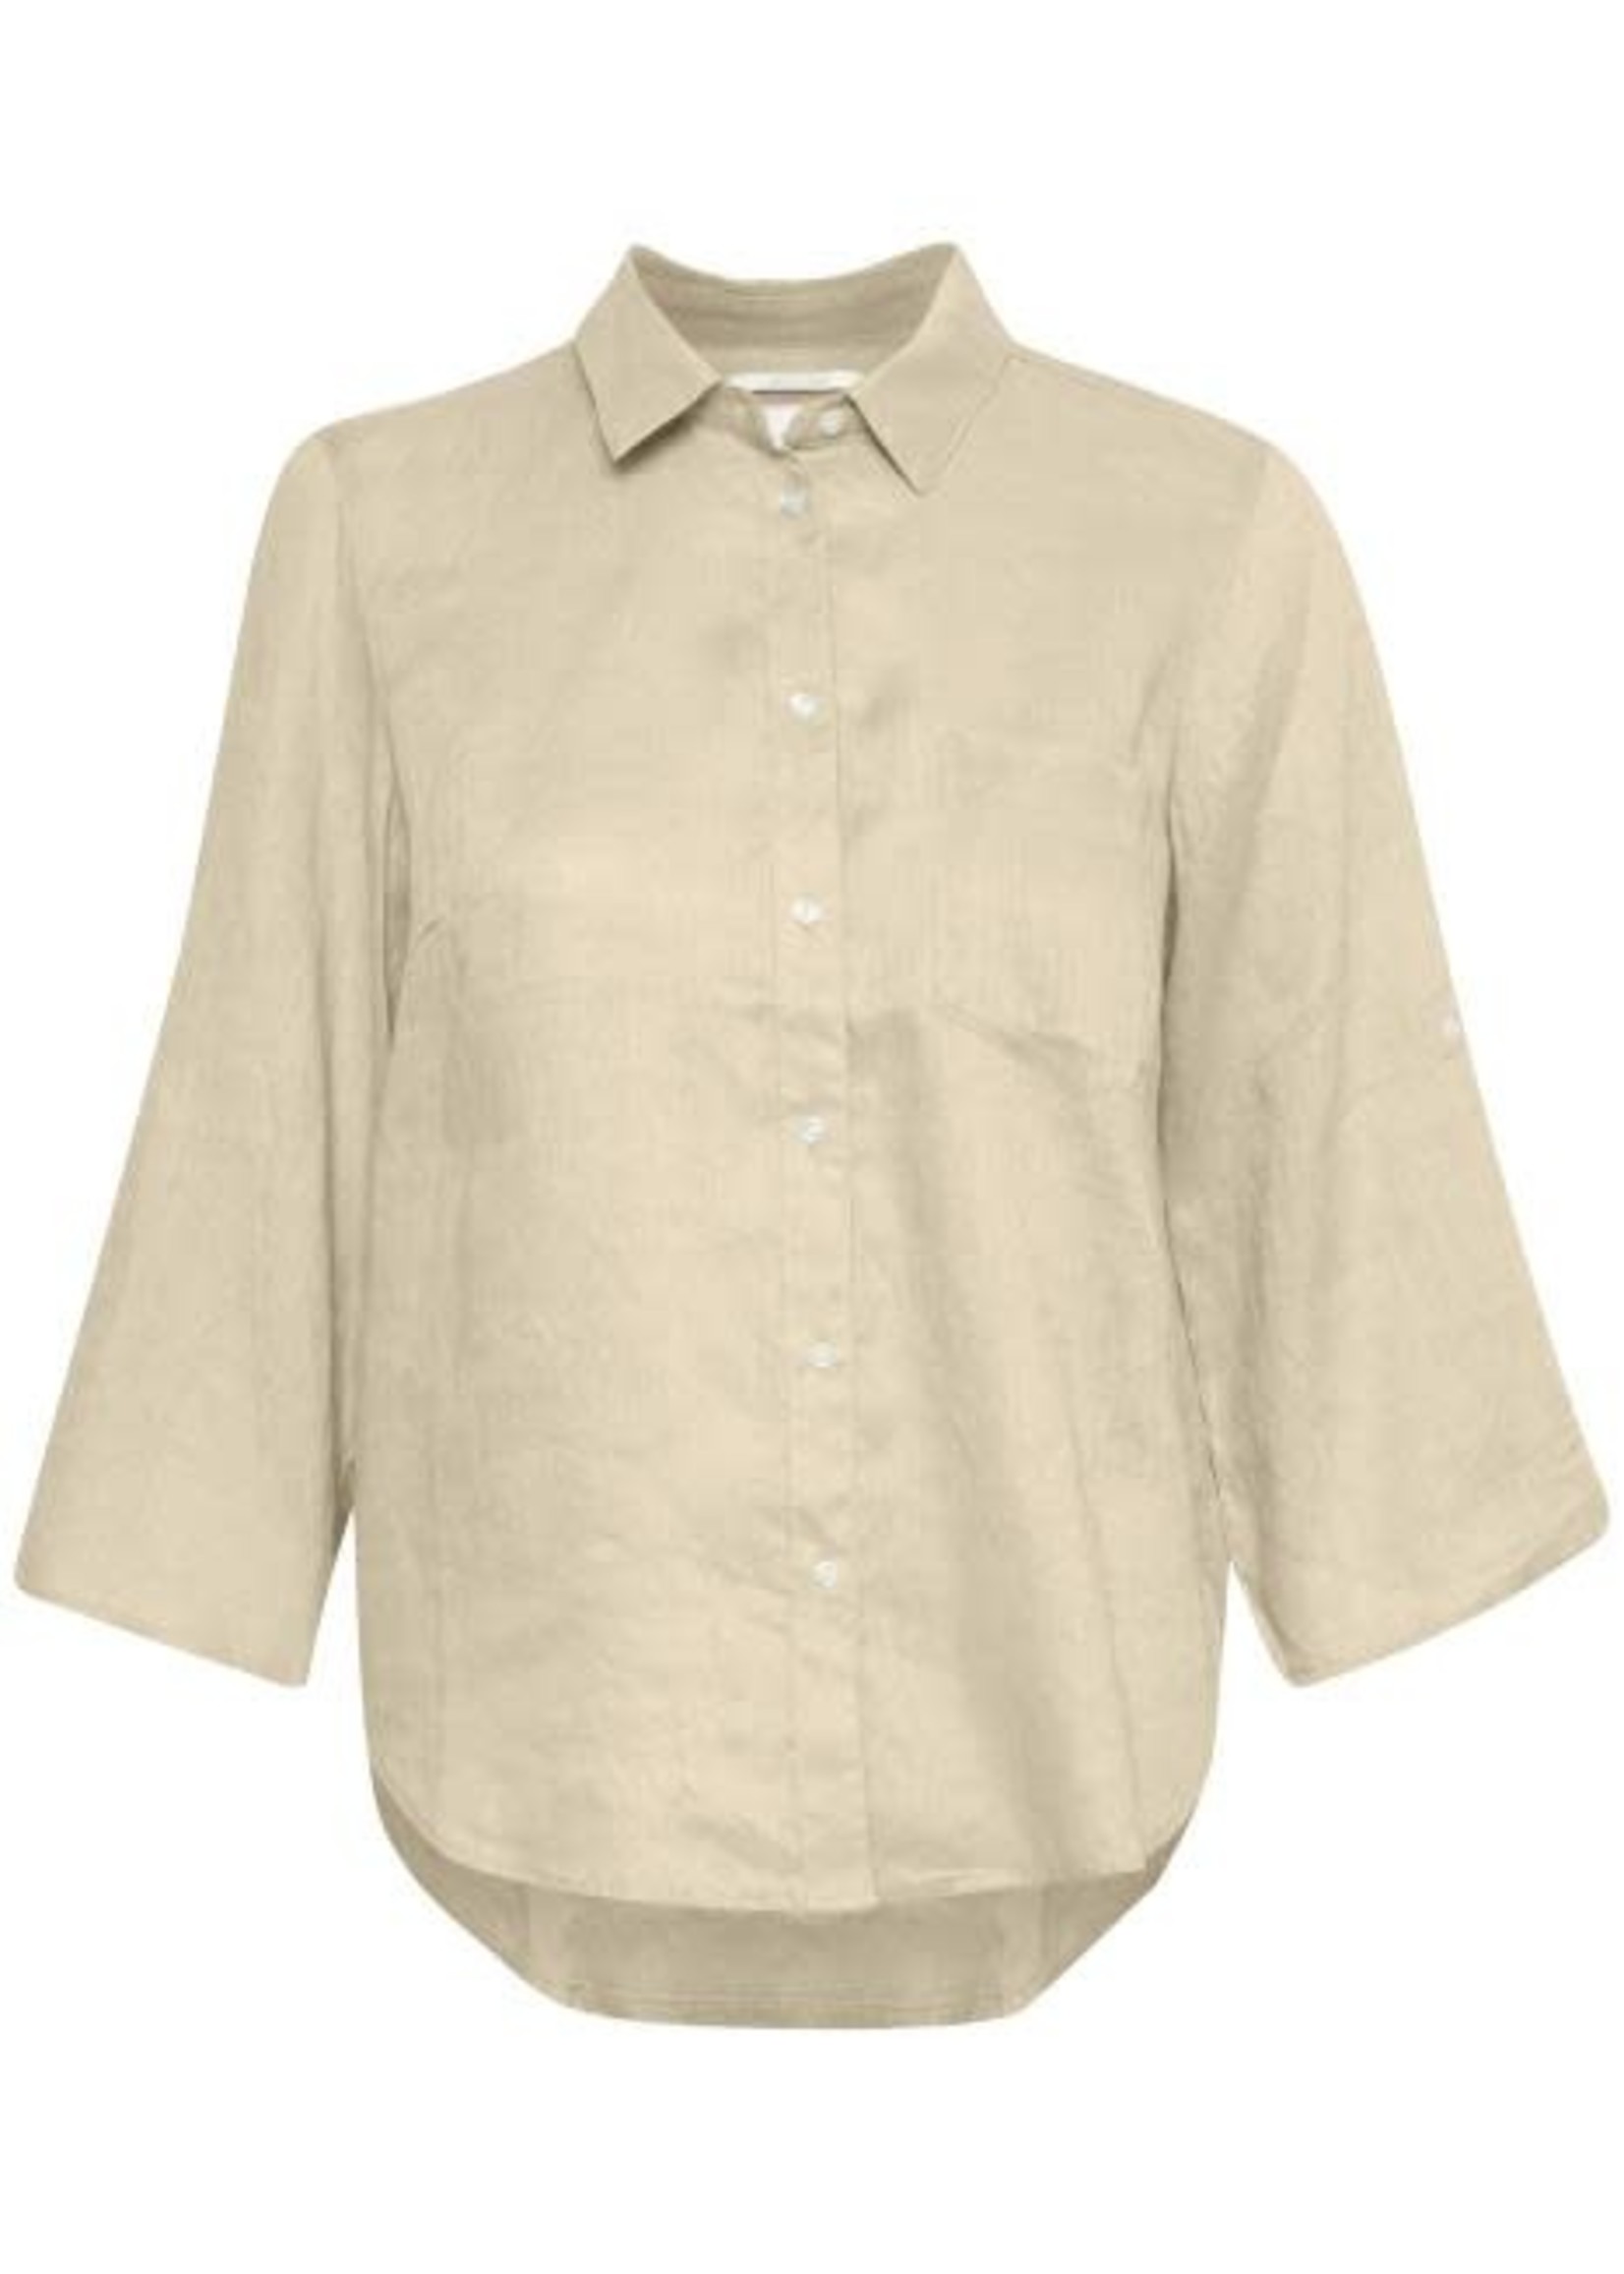 Cindies Linen Shirt